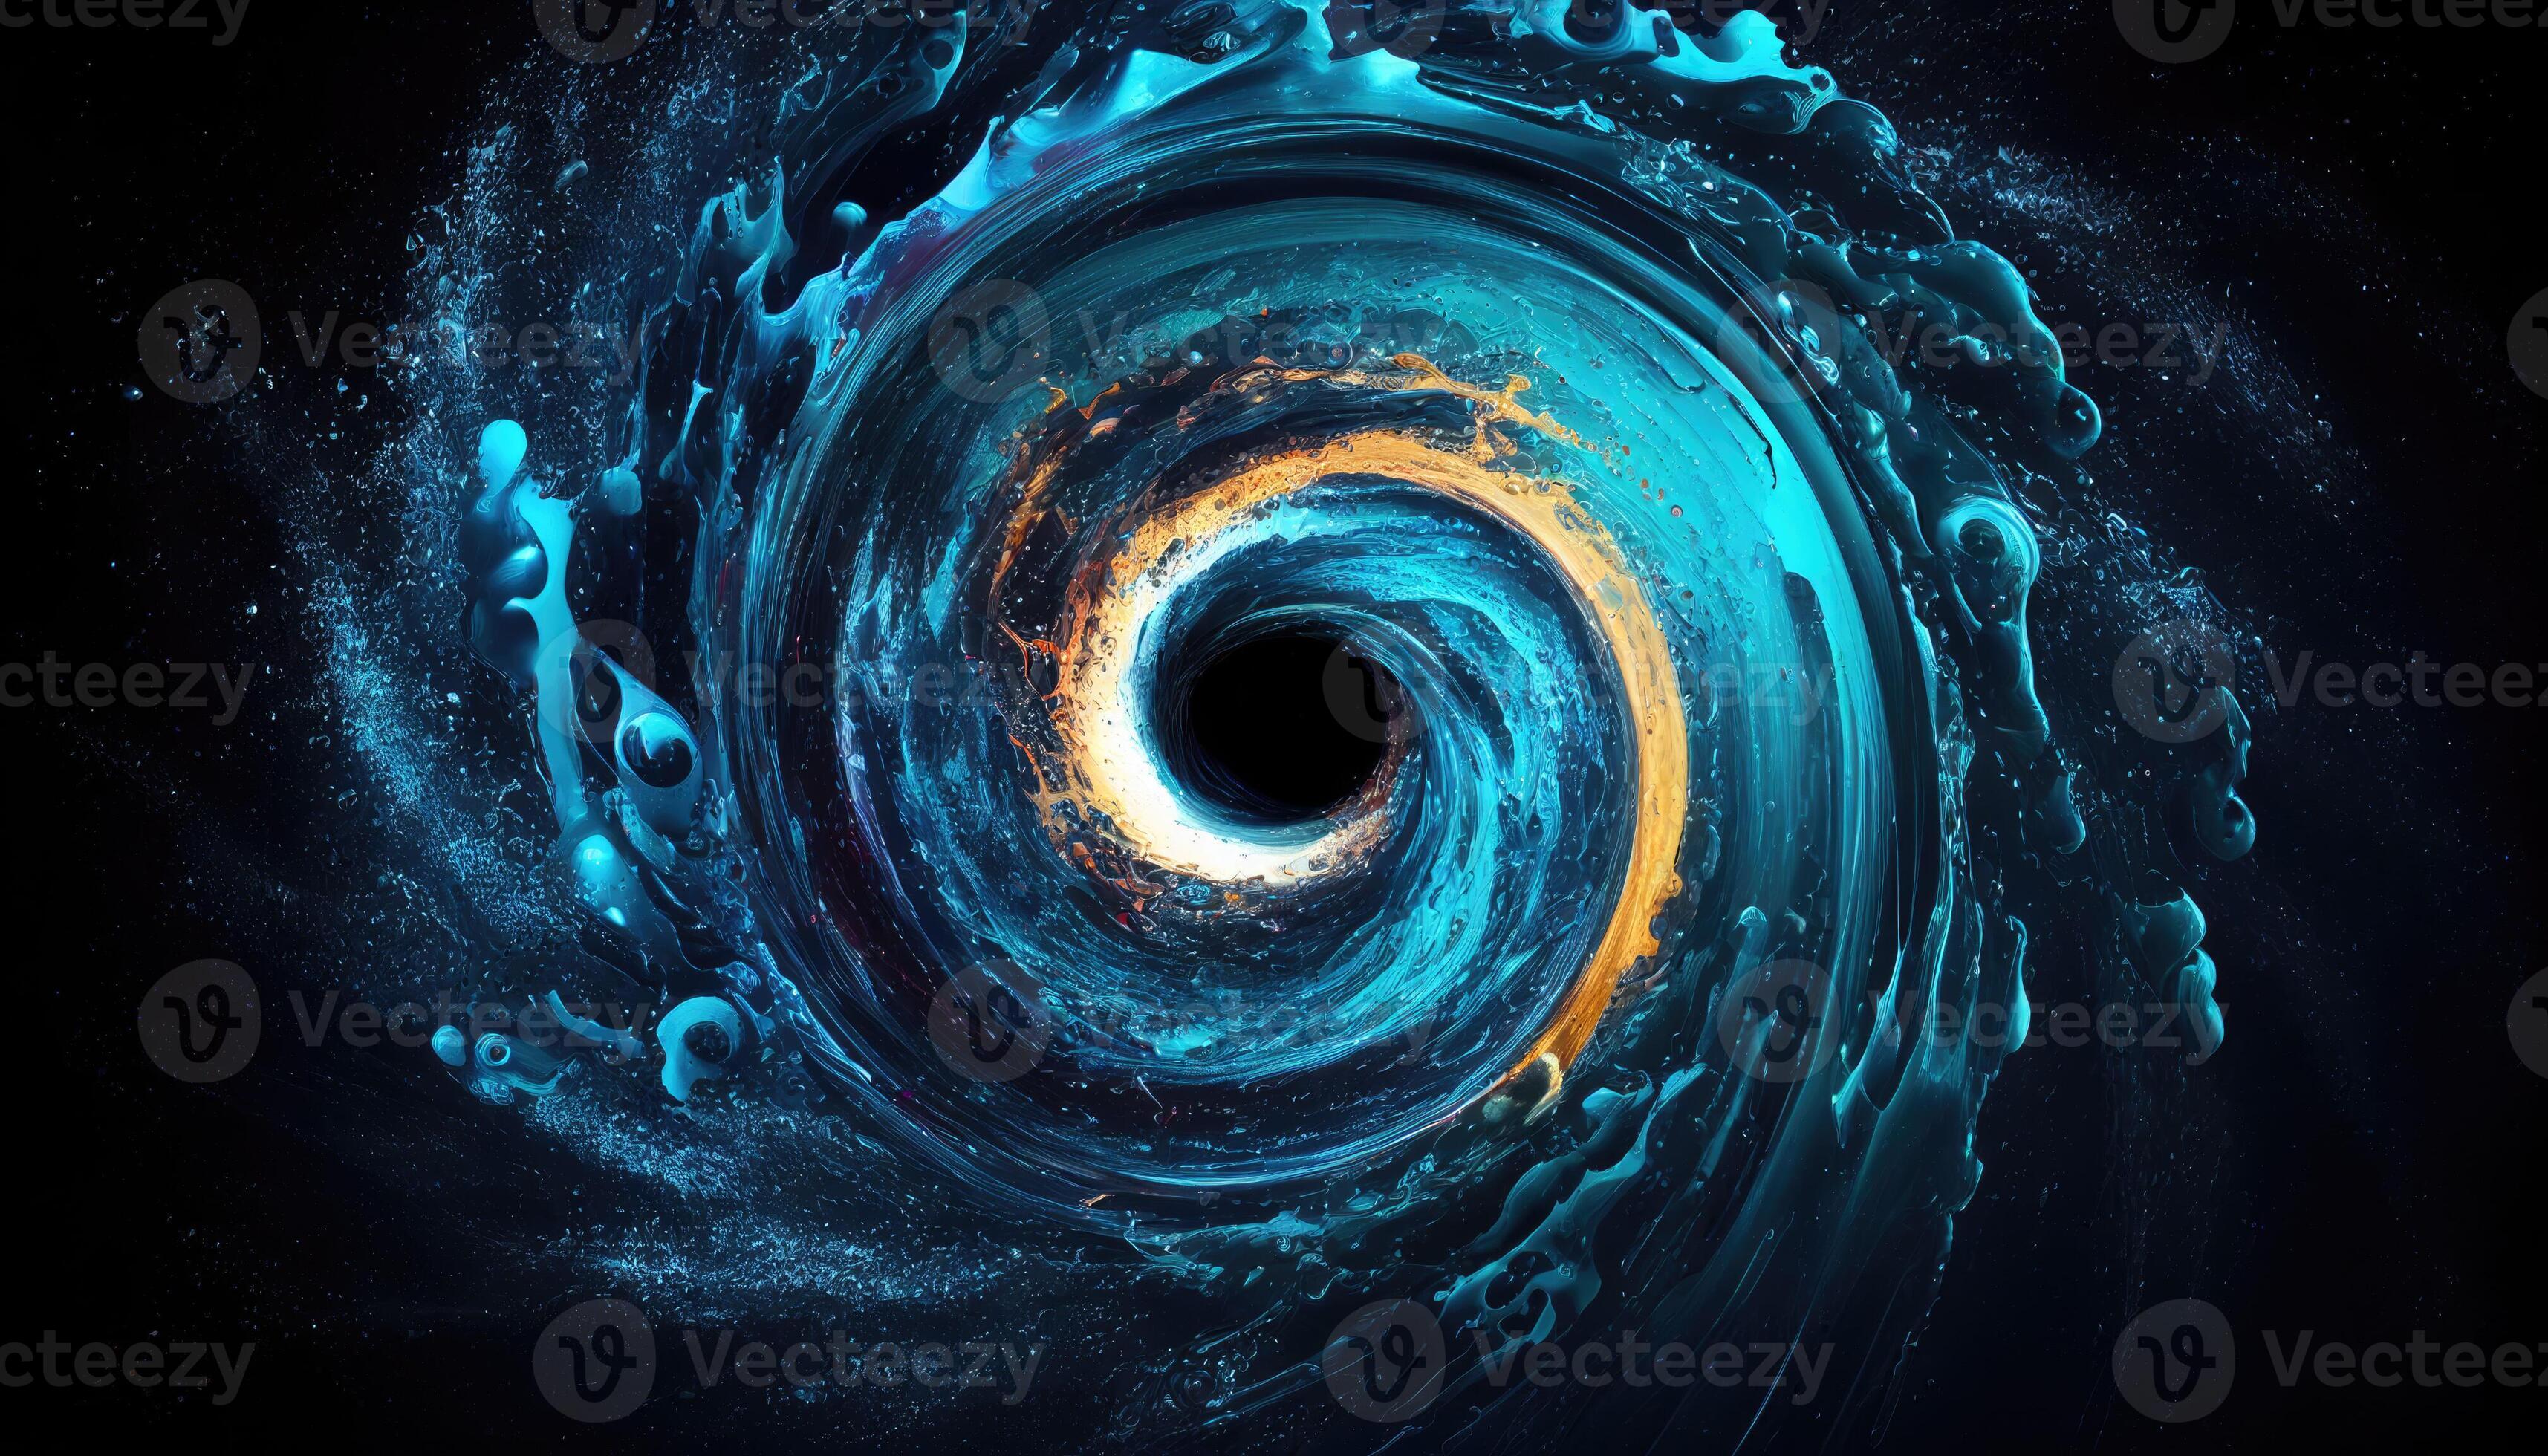 Water vortex or swirl background Stock Illustration